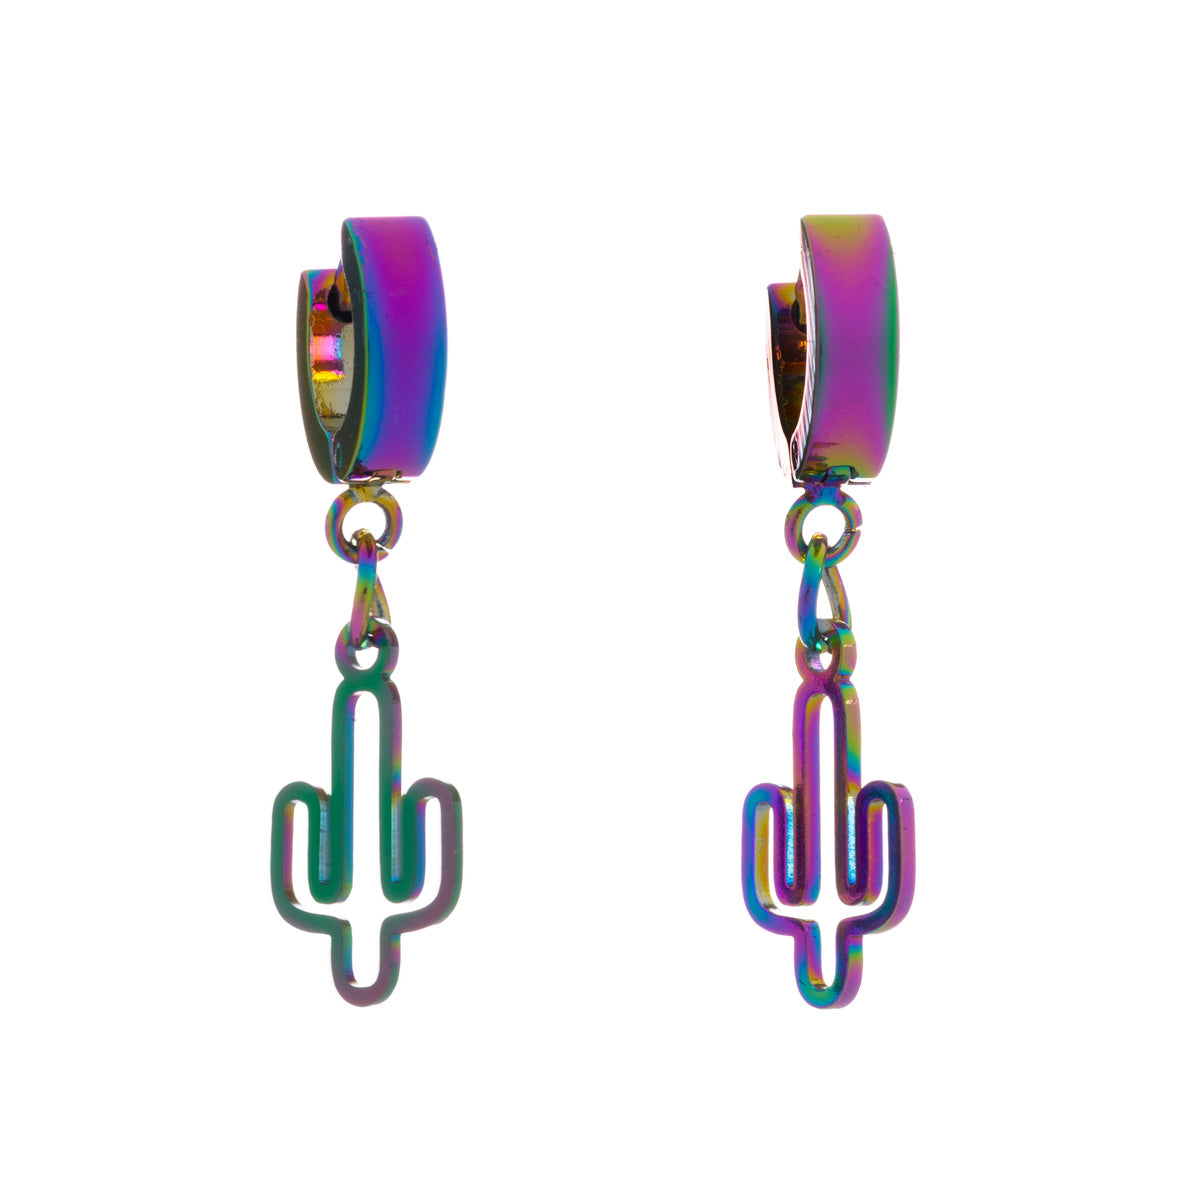 Ring hanging cactus steel ring earrings